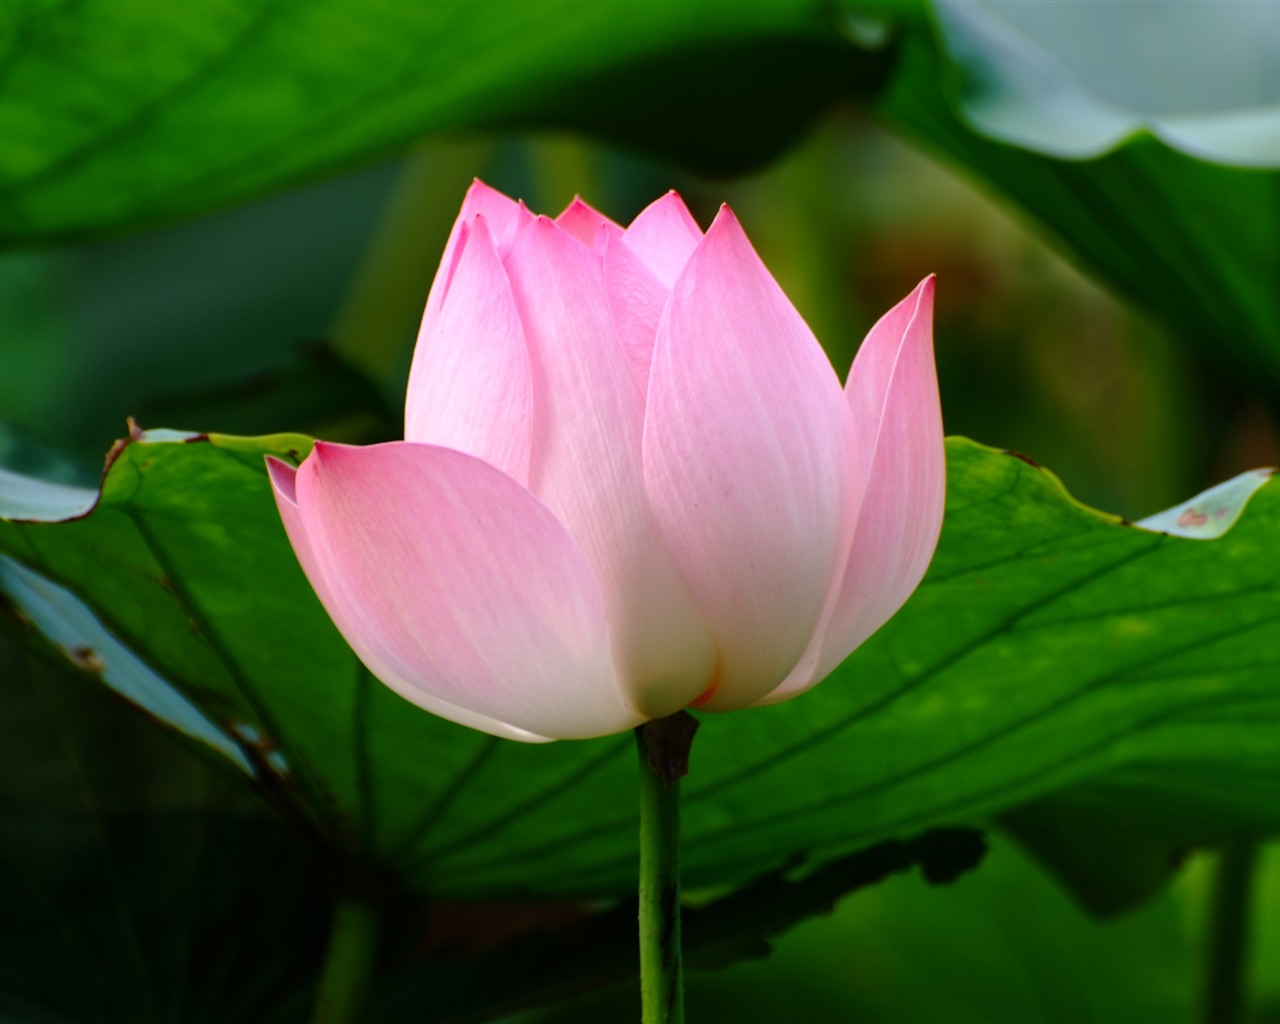 Rose Garden of the Lotus (rebar works) #5 - 1280x1024